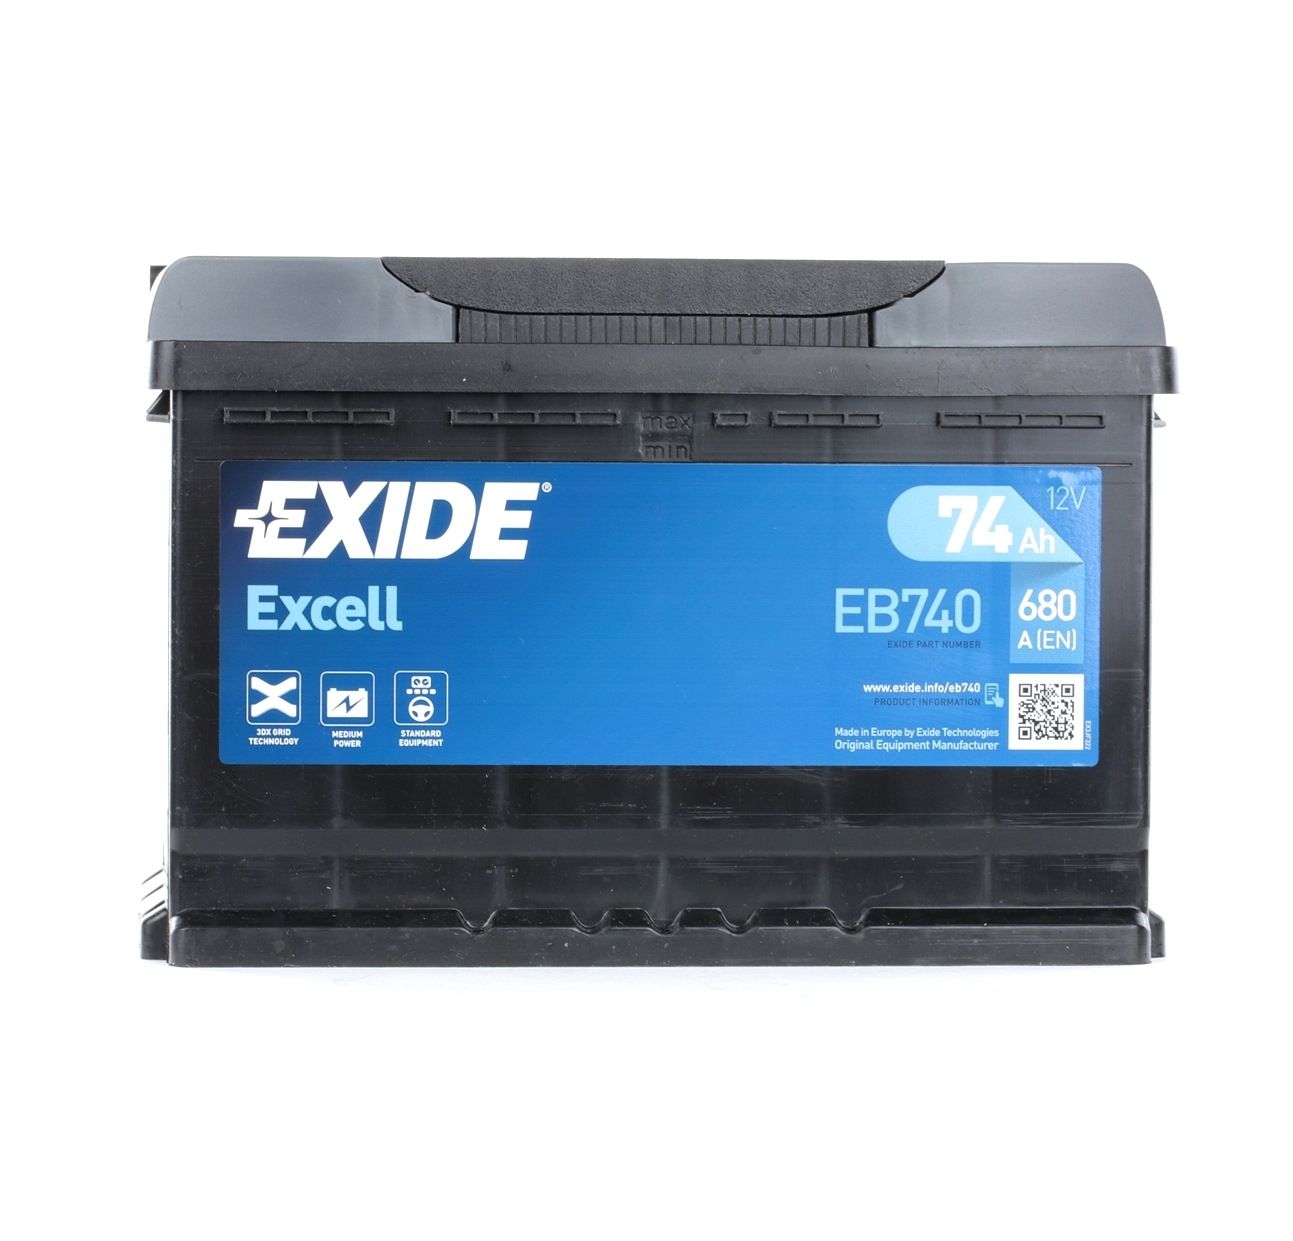 EXIDE _EB740